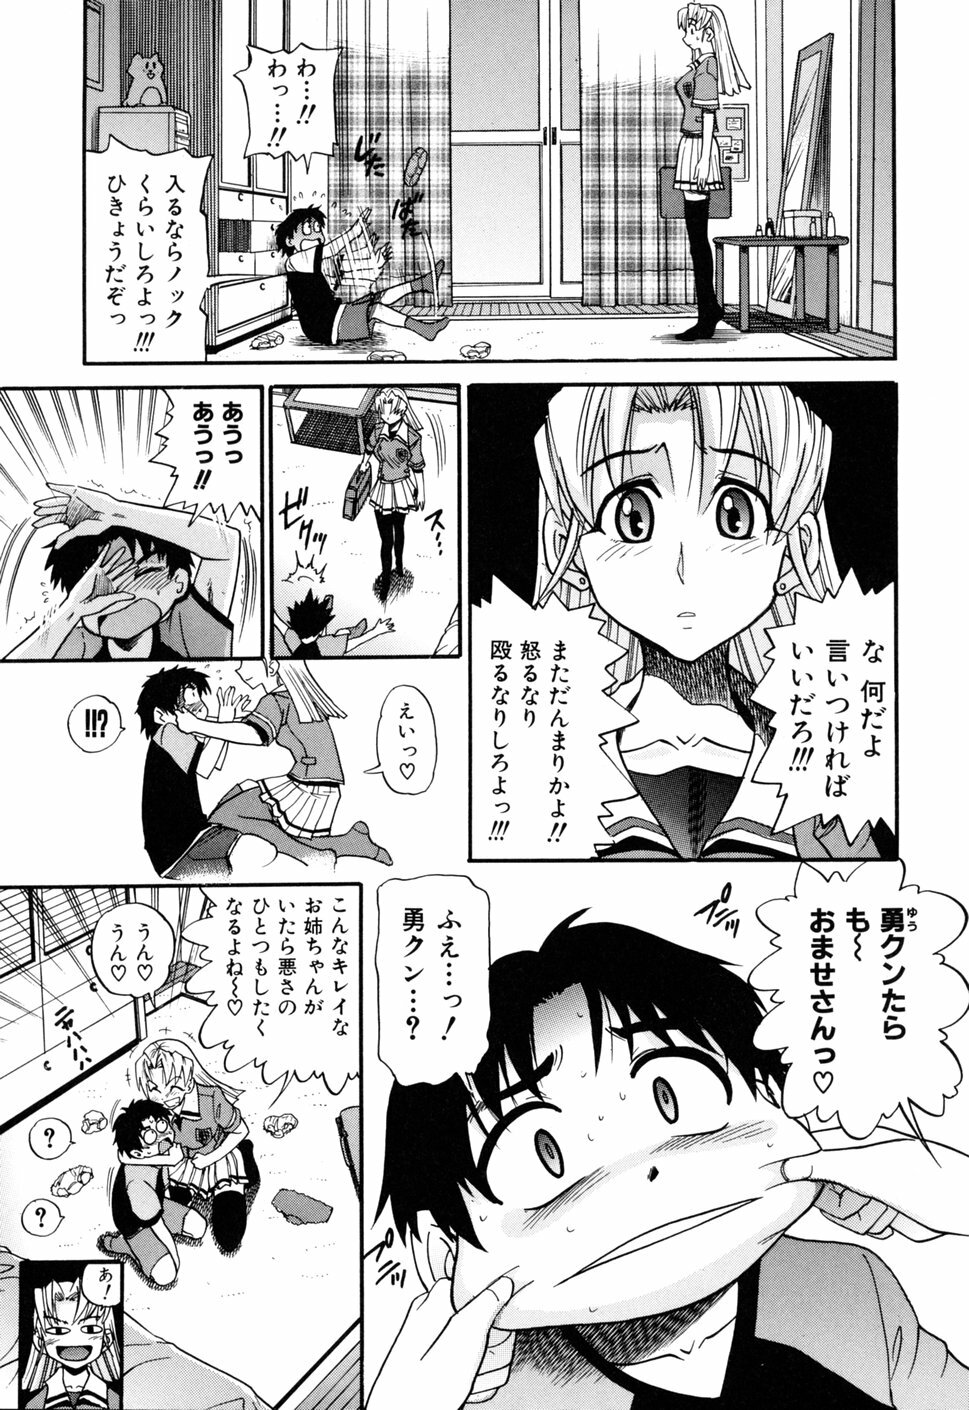 [DISTANCE] Ochiru Tenshi Vol. 1 page 15 full